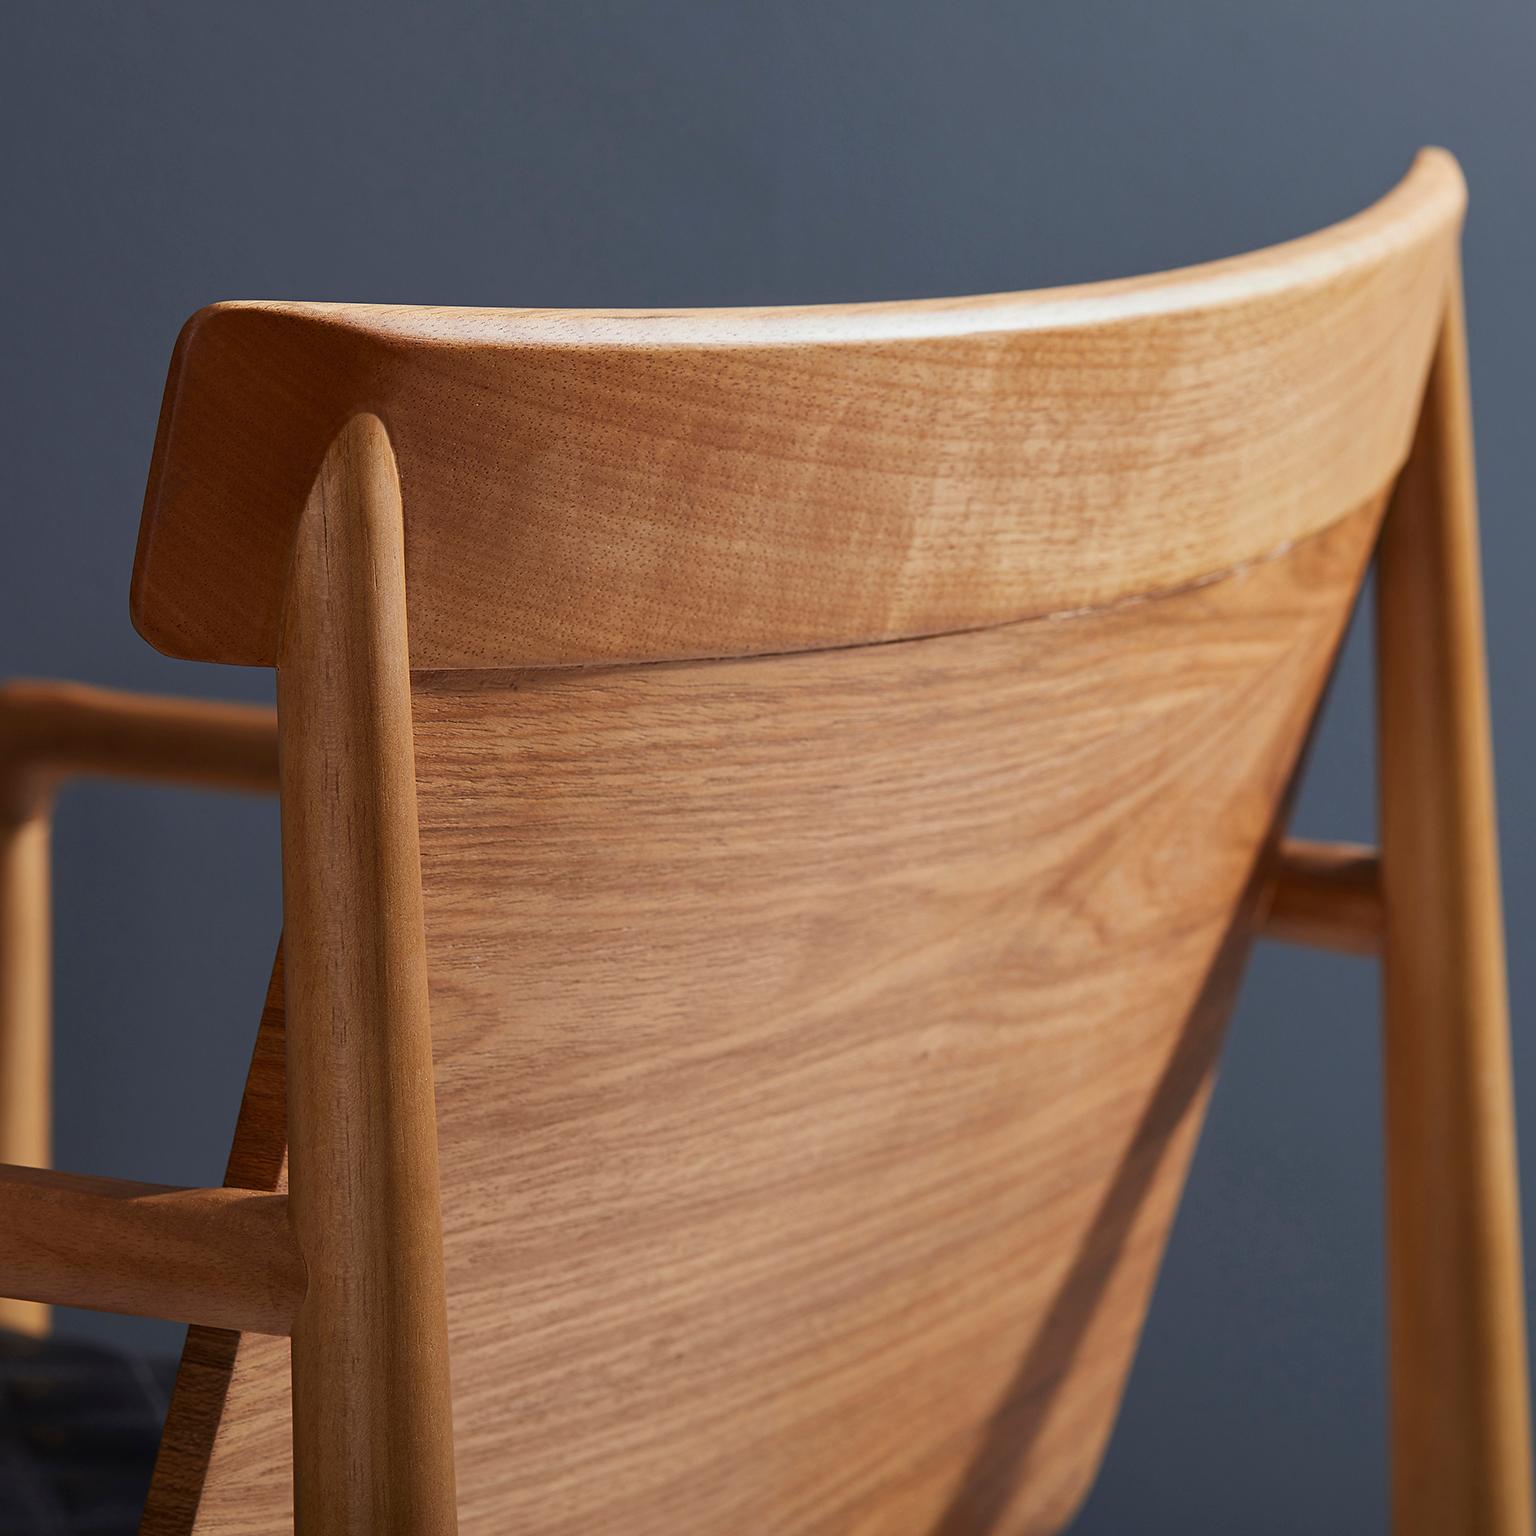 Cuir Chaise contemporaine en bois massif naturel, recouverte de cuir, avec accoudoirs en vente